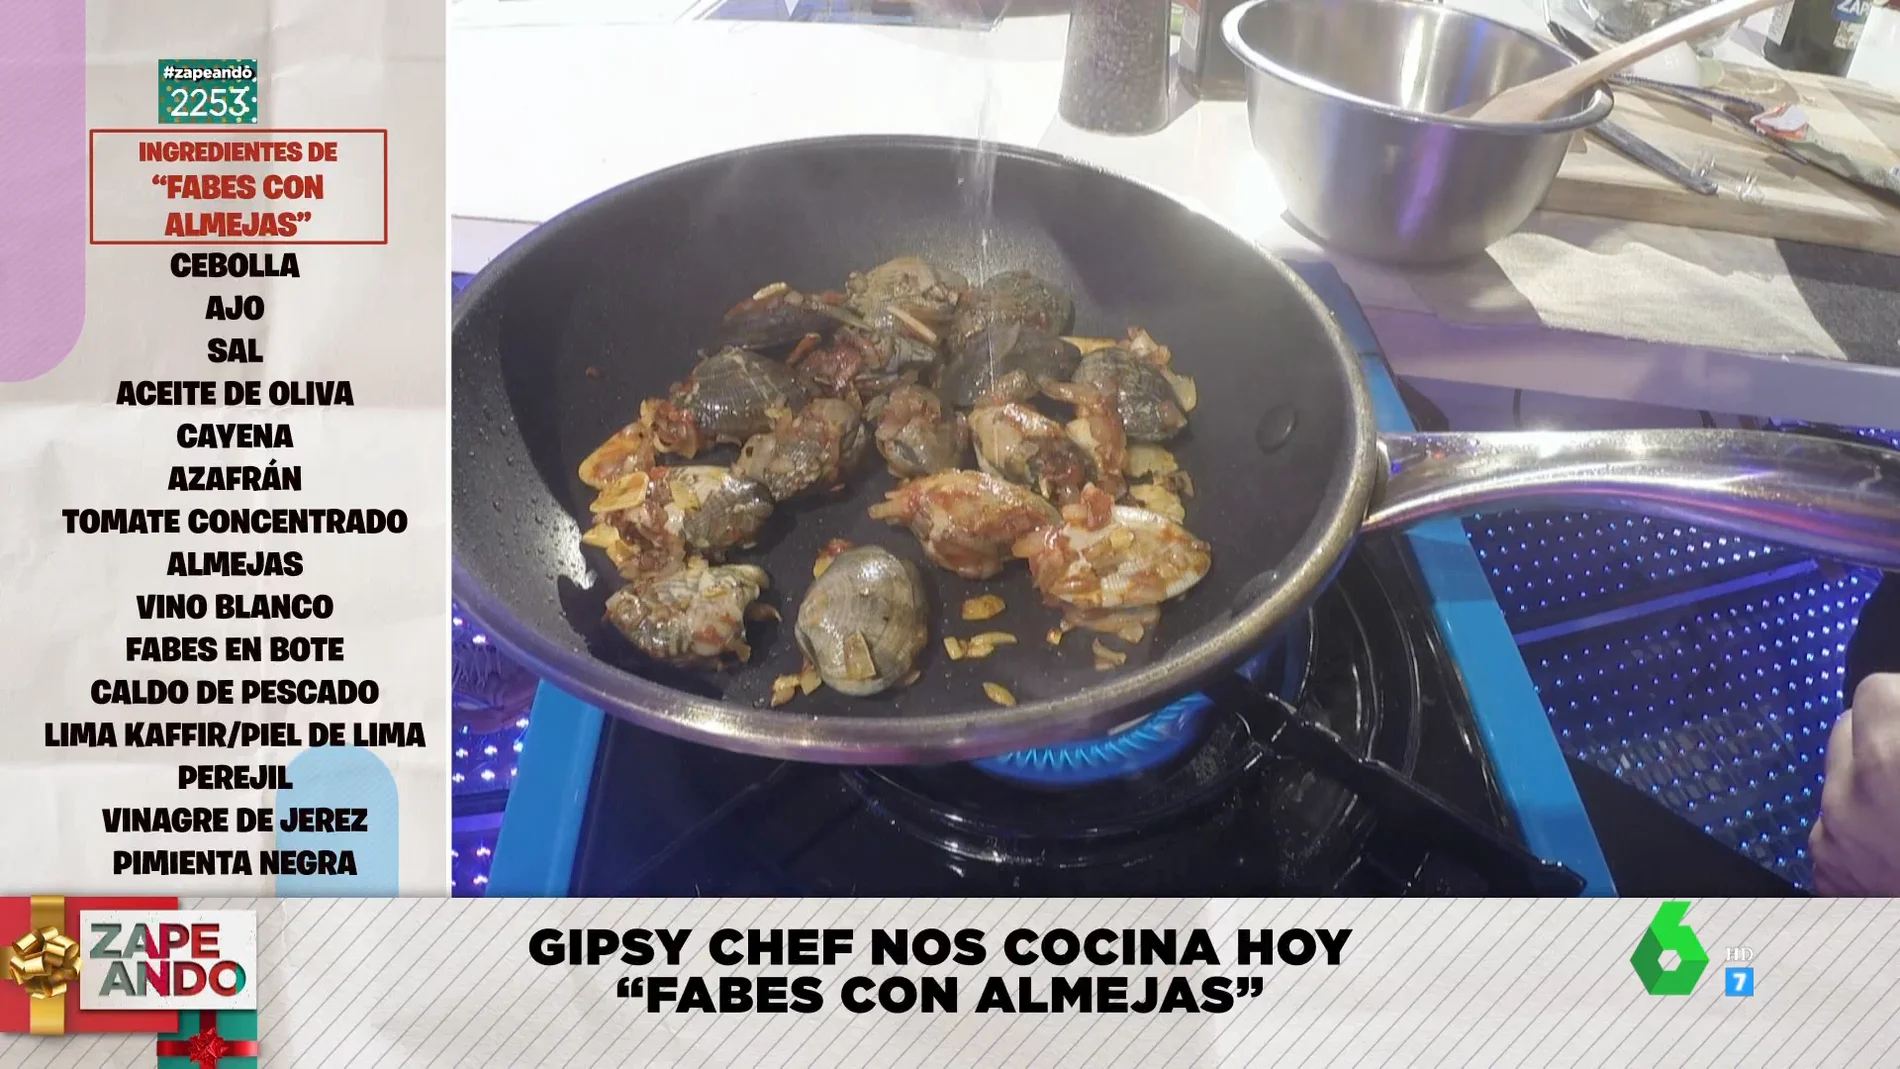  Gipsy Chef te enseña a hacer unas fabes con almejas con "un sabor increíble" en pleno directo